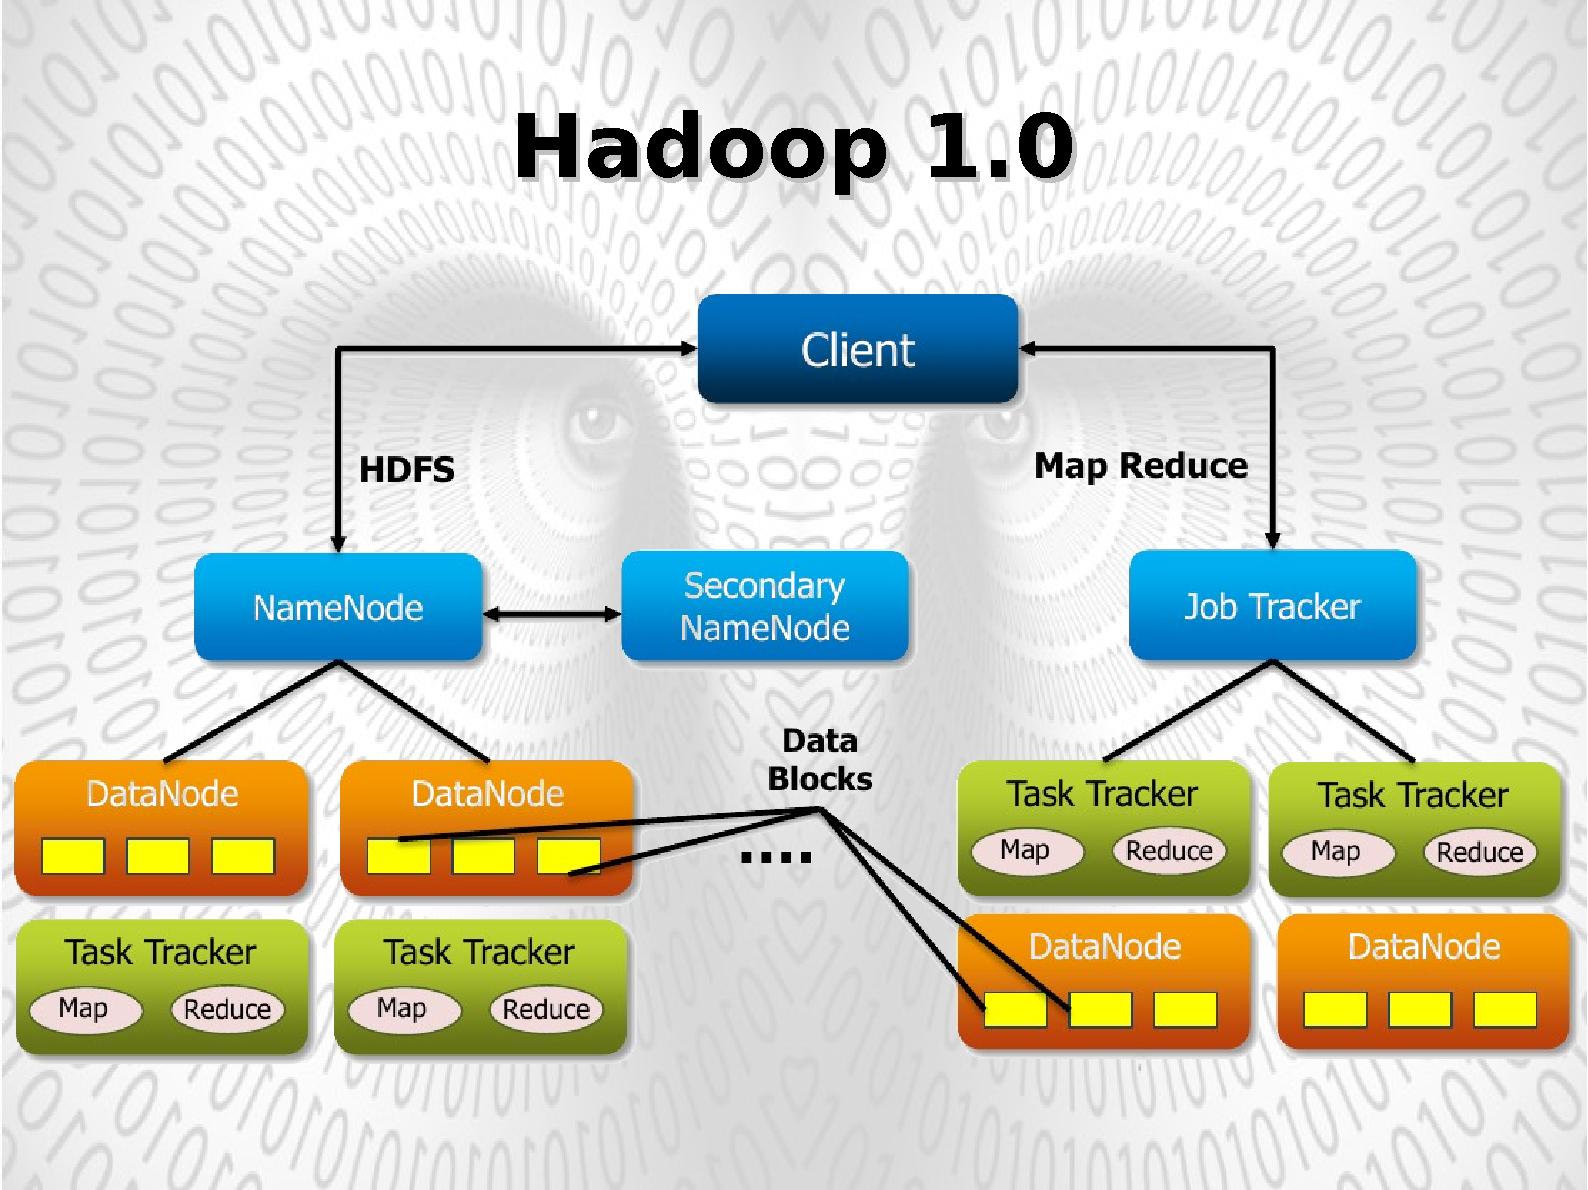 Файл:Apache Hadoop 2.0 (YARN). Последние тенденции в обработке больших данных (BigData).pdf